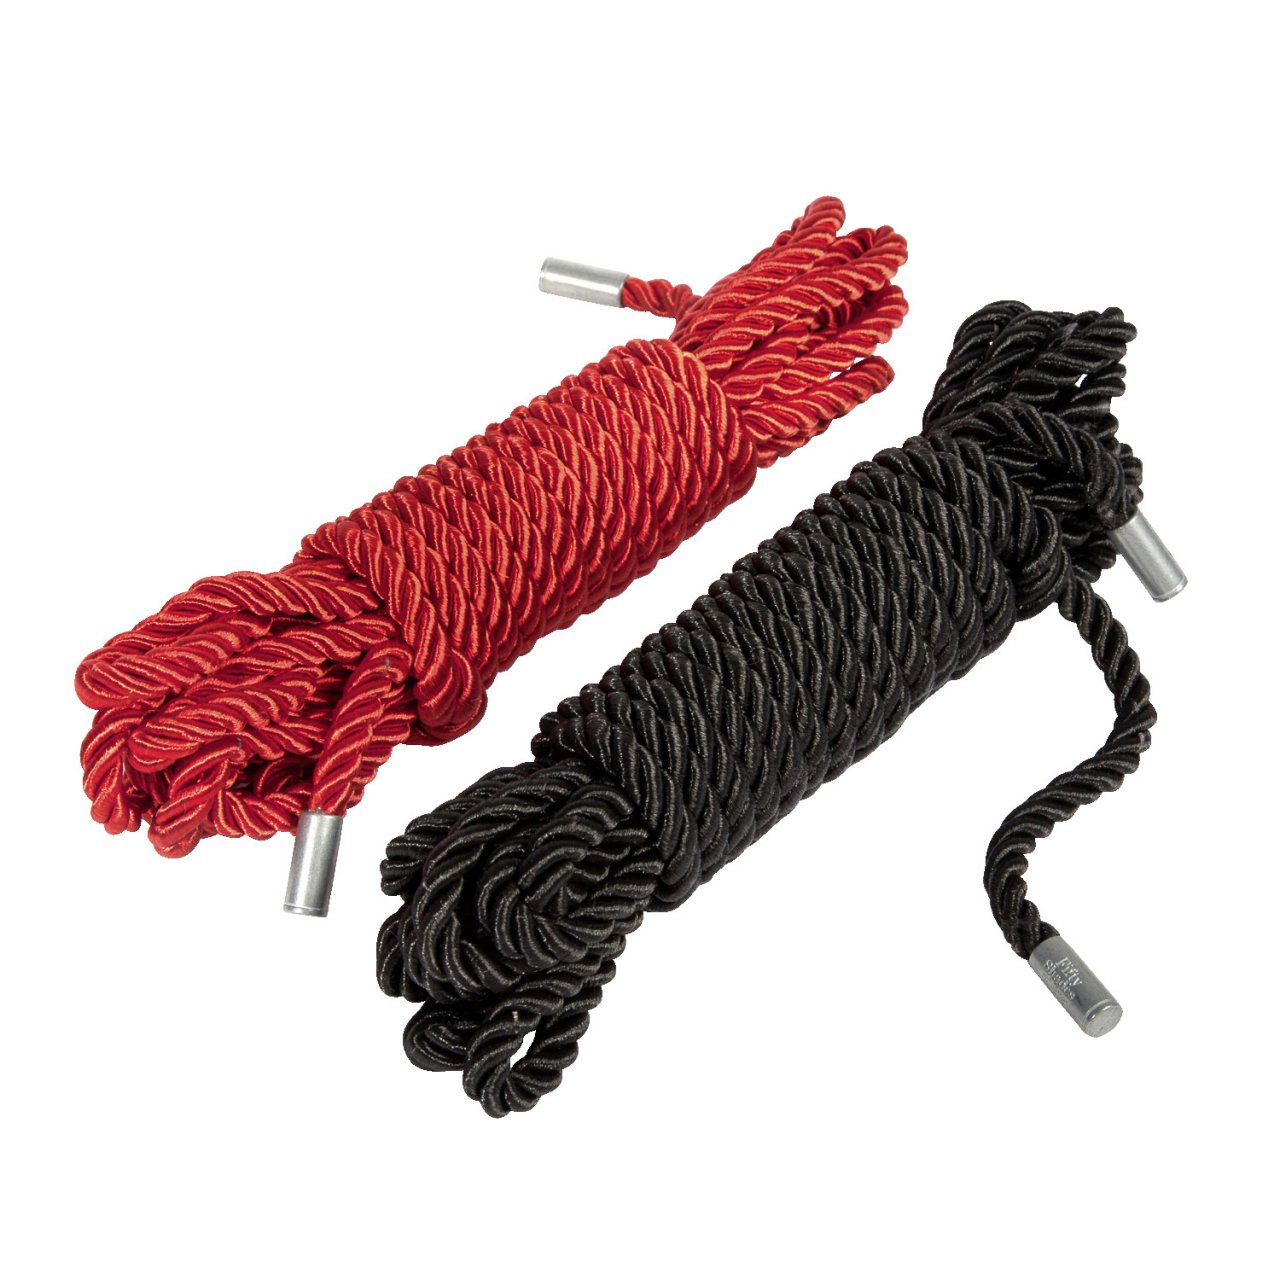 Bondage rope set for tight bondage